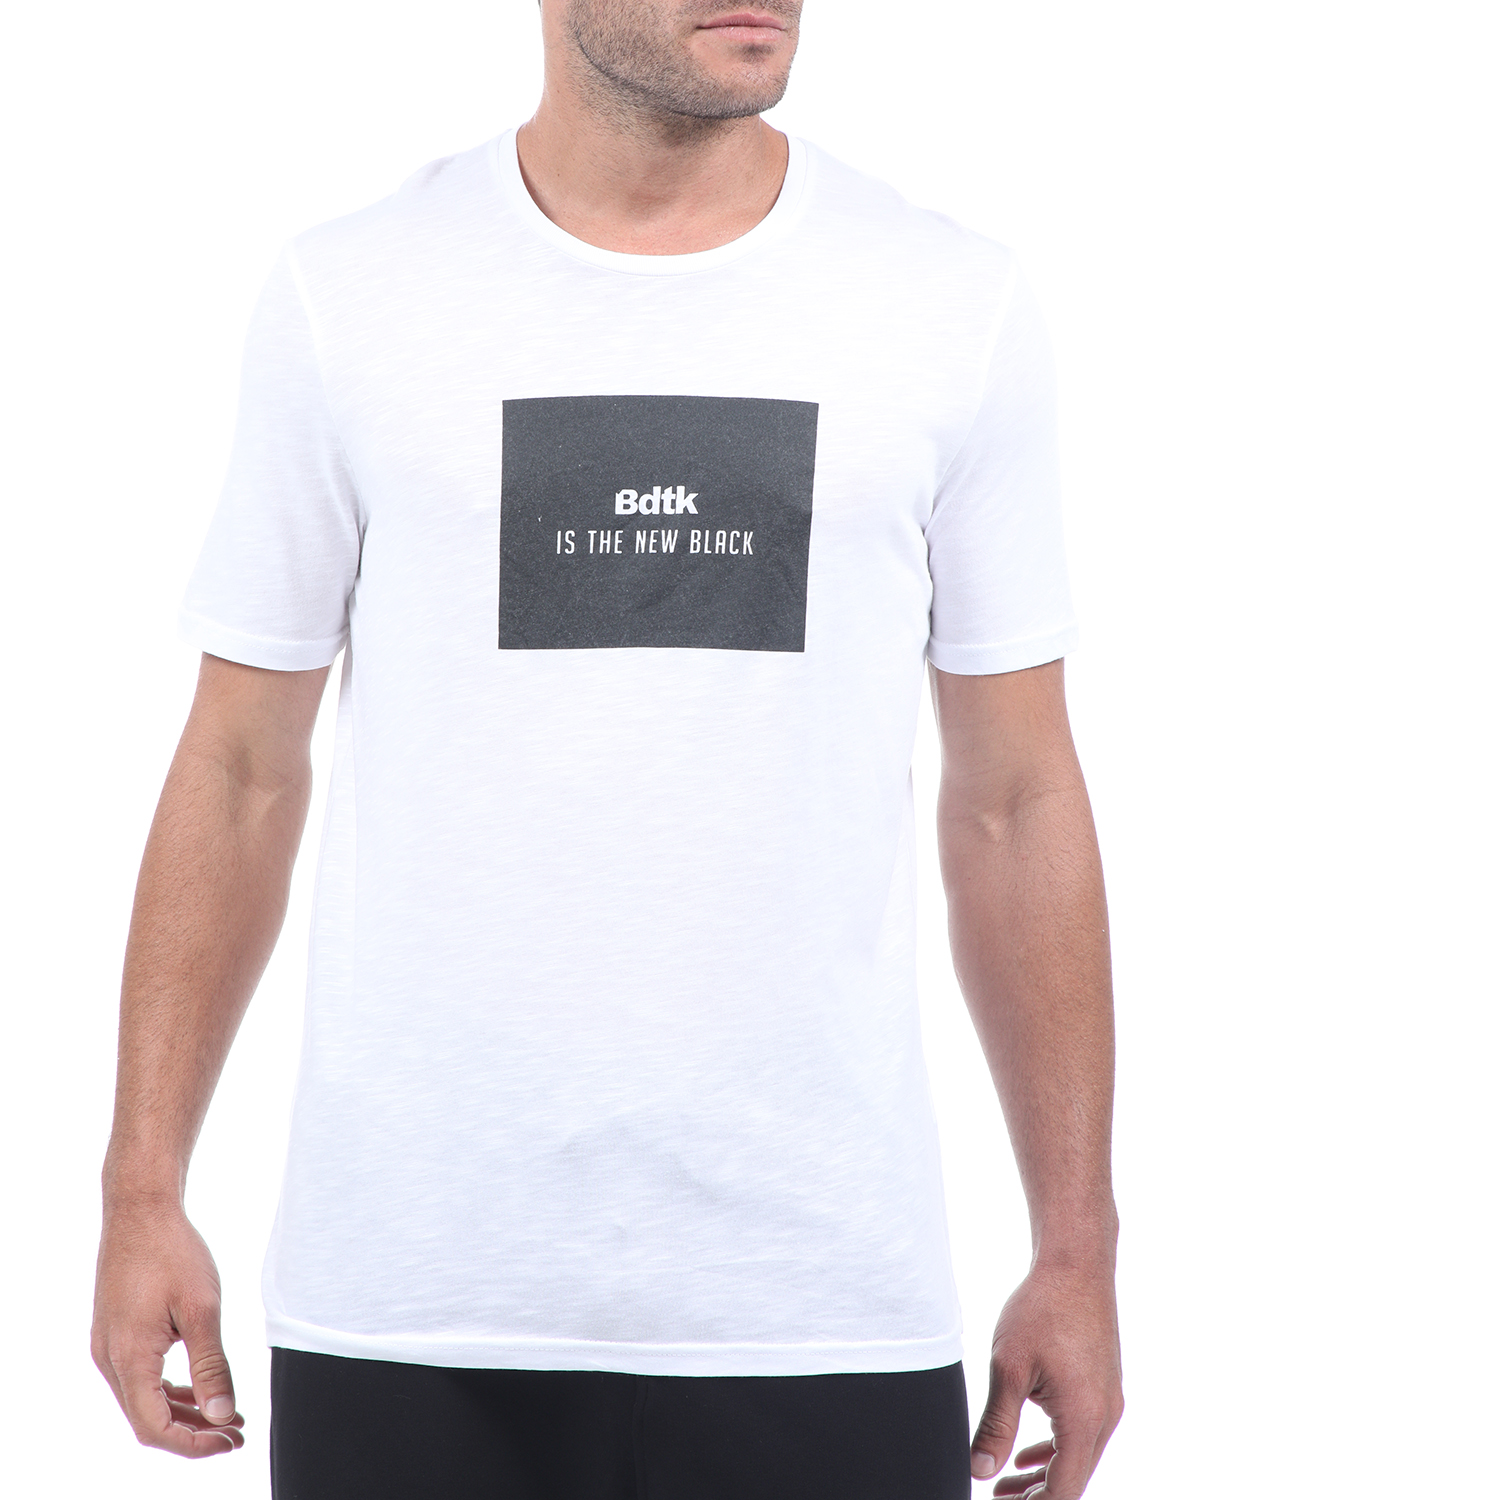 Ανδρικά/Ρούχα/Αθλητικά/T-shirt BODYTALK - Ανδρικό t-shirt BODYTALK λευκό